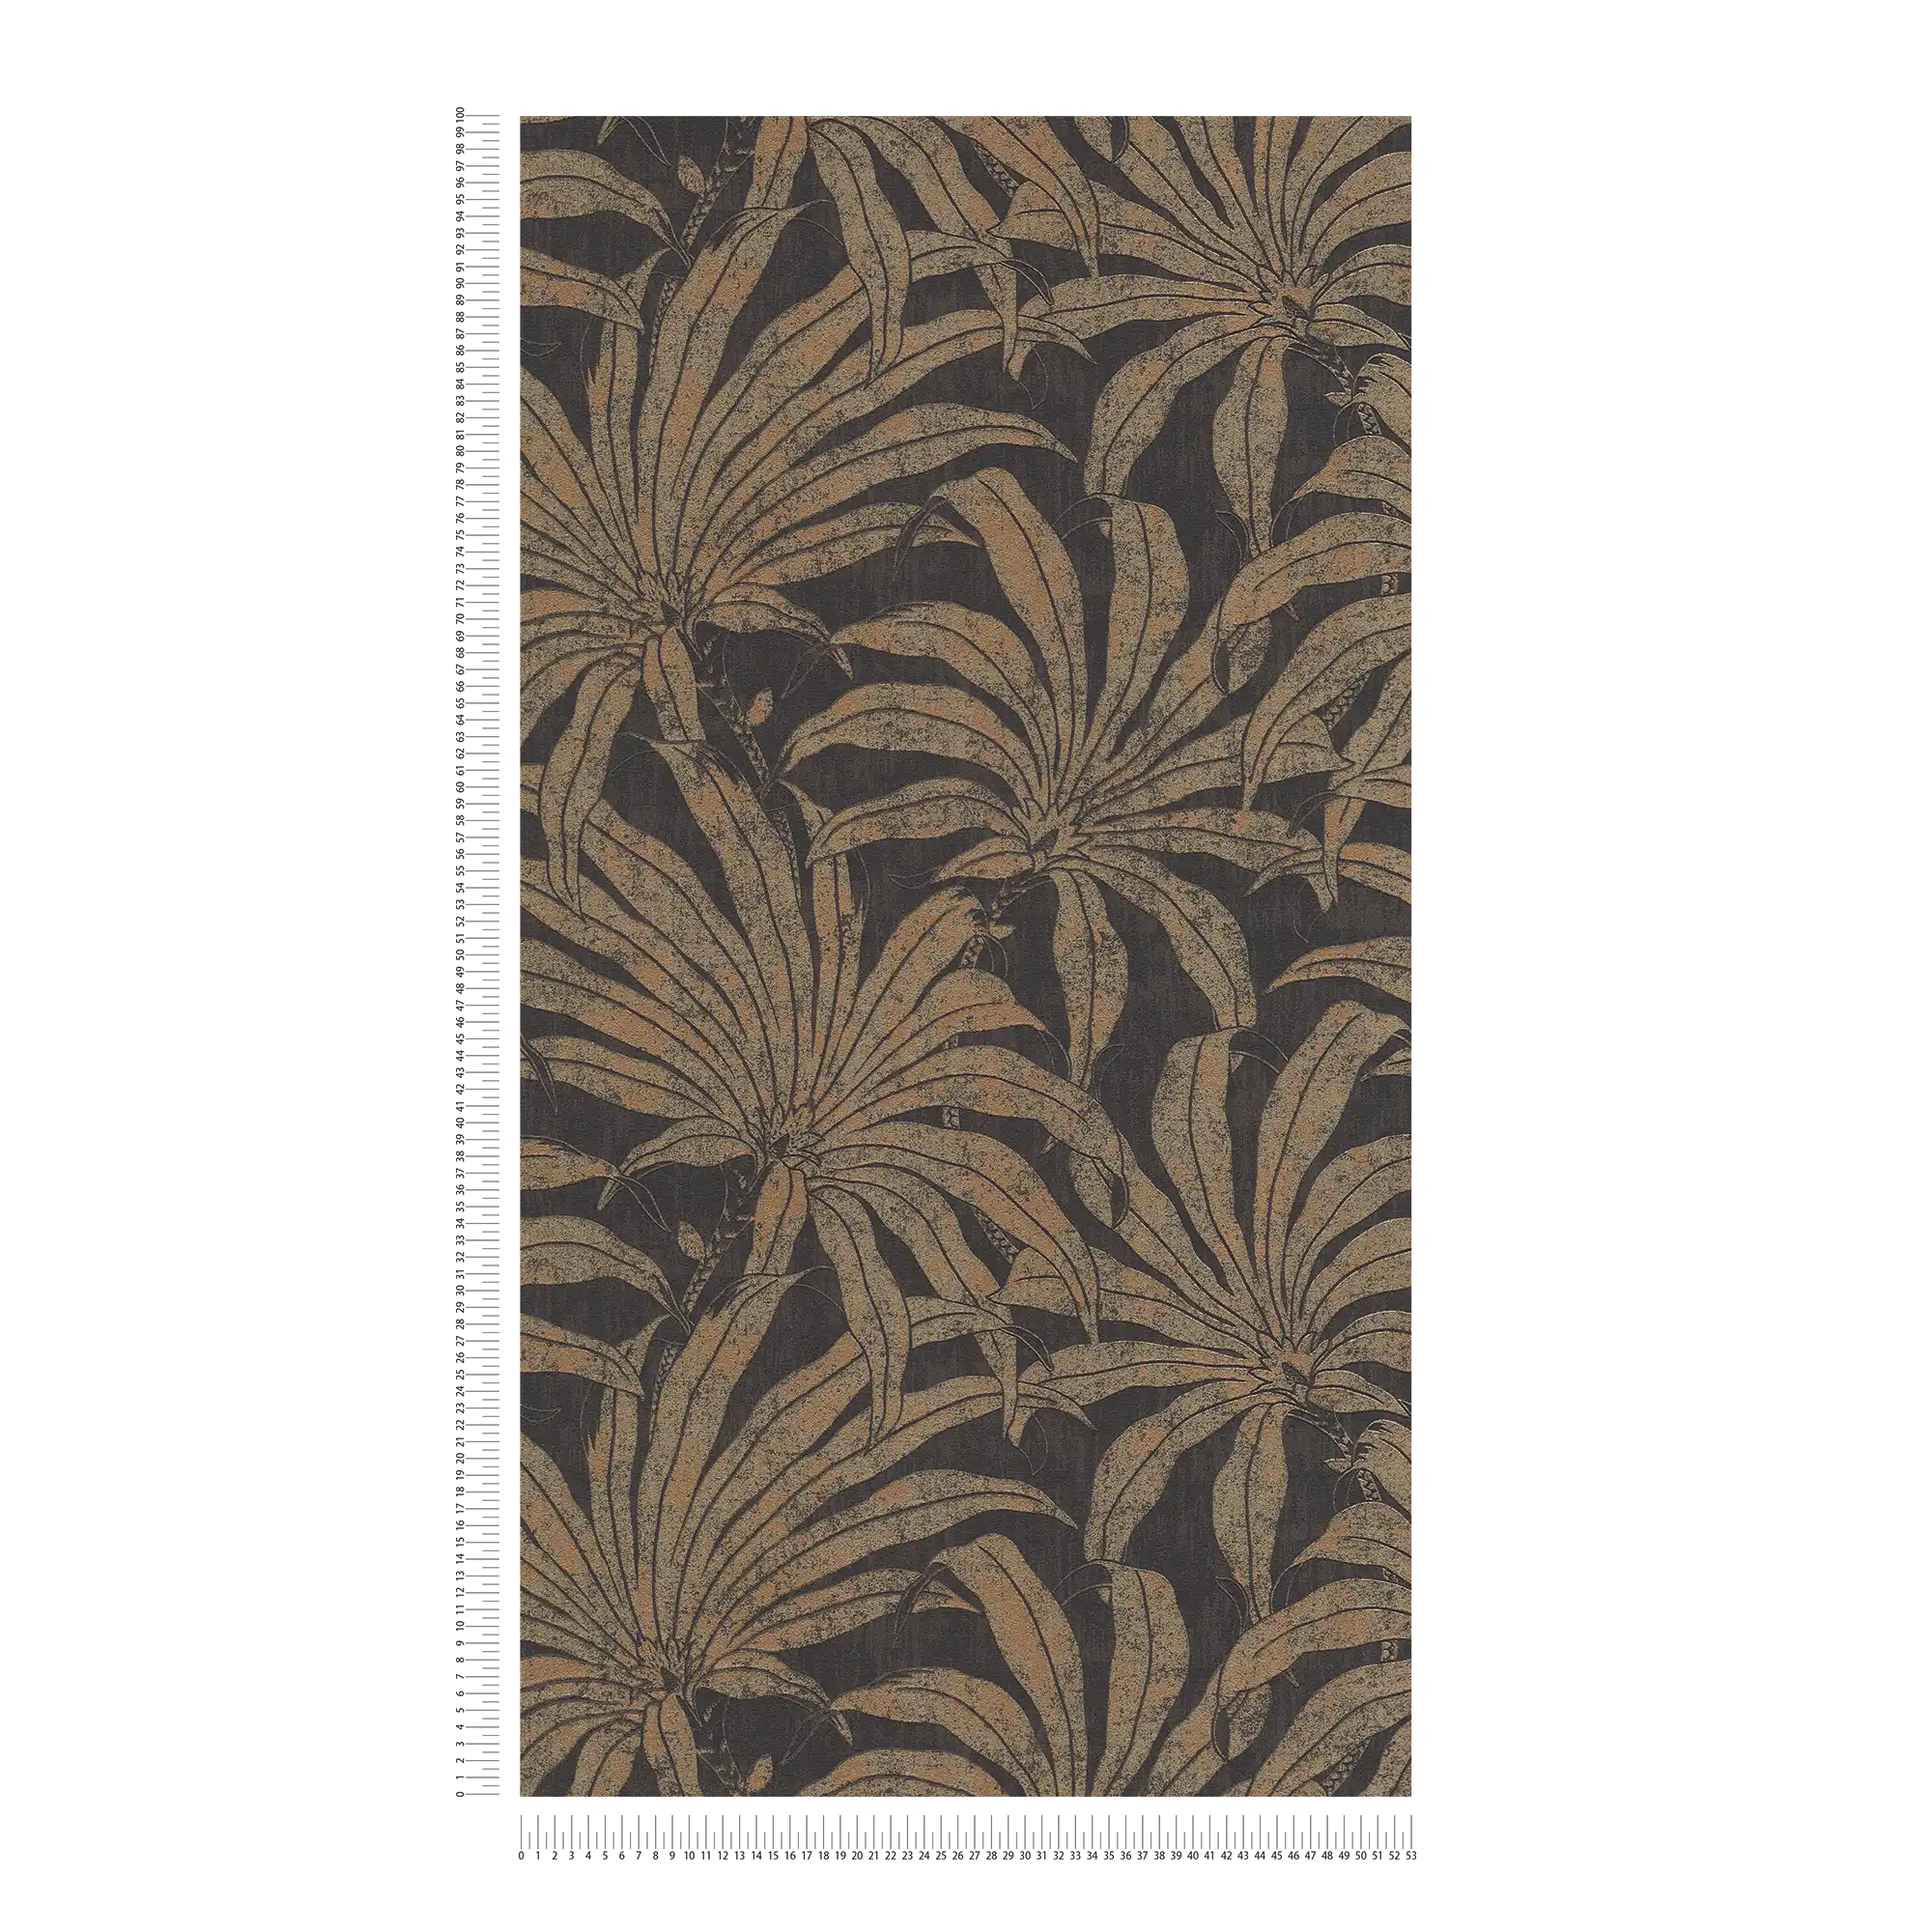             Elegant patroonbehang met jungle bloemmotief - zwart, goud, brons
        